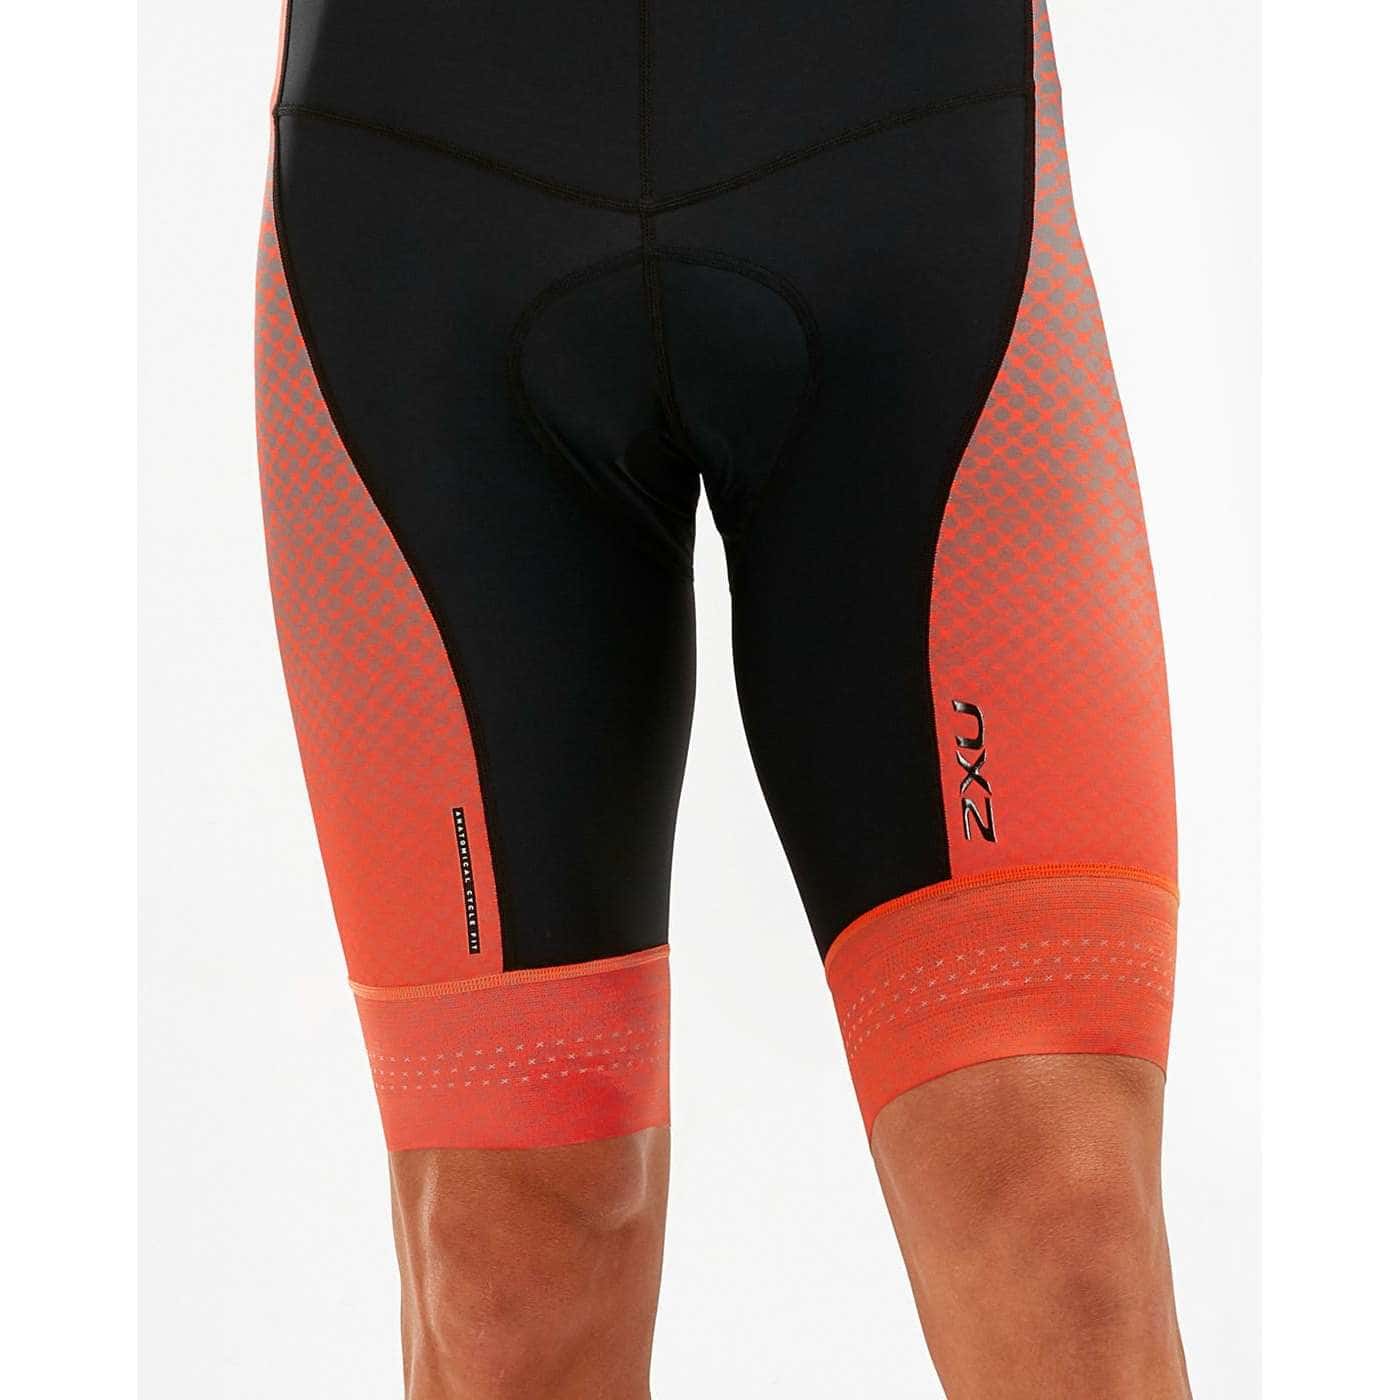 ビブショーツ Elite Cycle Bib Shorts - Black/Textured Mesh Ombre [メンズ] MC5496b-BLK/TMO - STYLE BIKE ONLINE SHOP